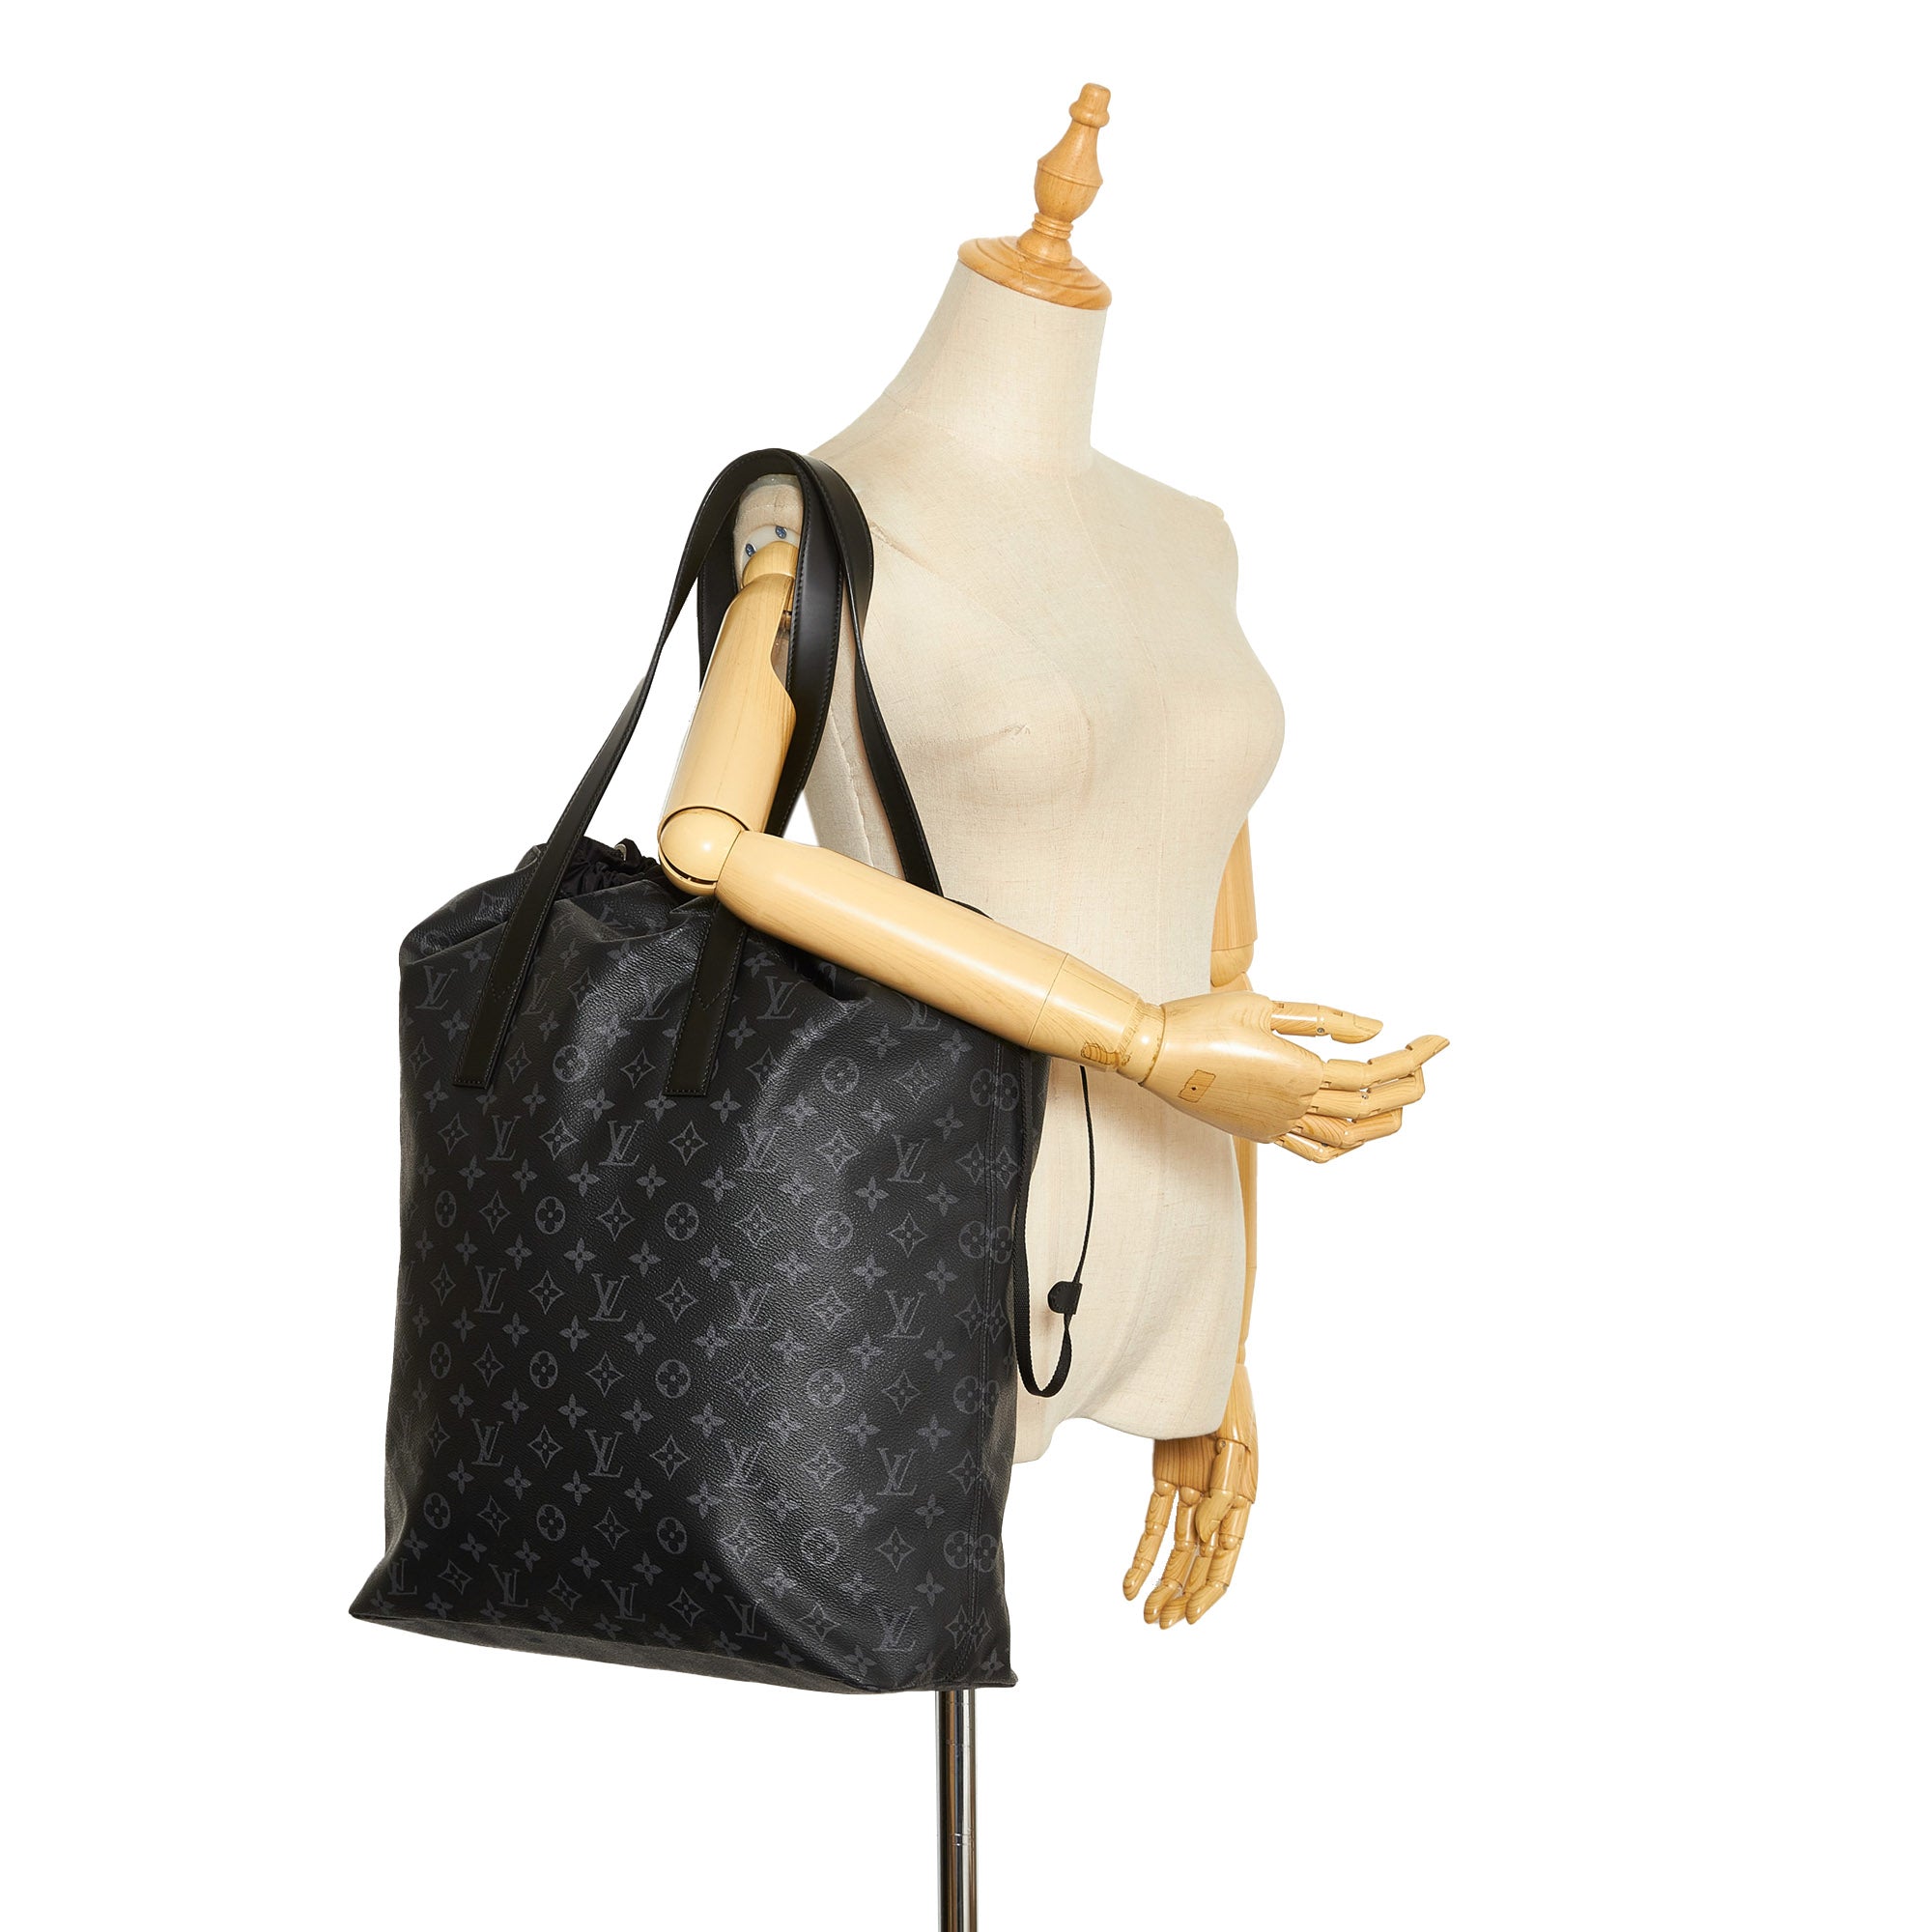 Black Louis Vuitton Monogram Eclipse Cabas Light Tote Bag